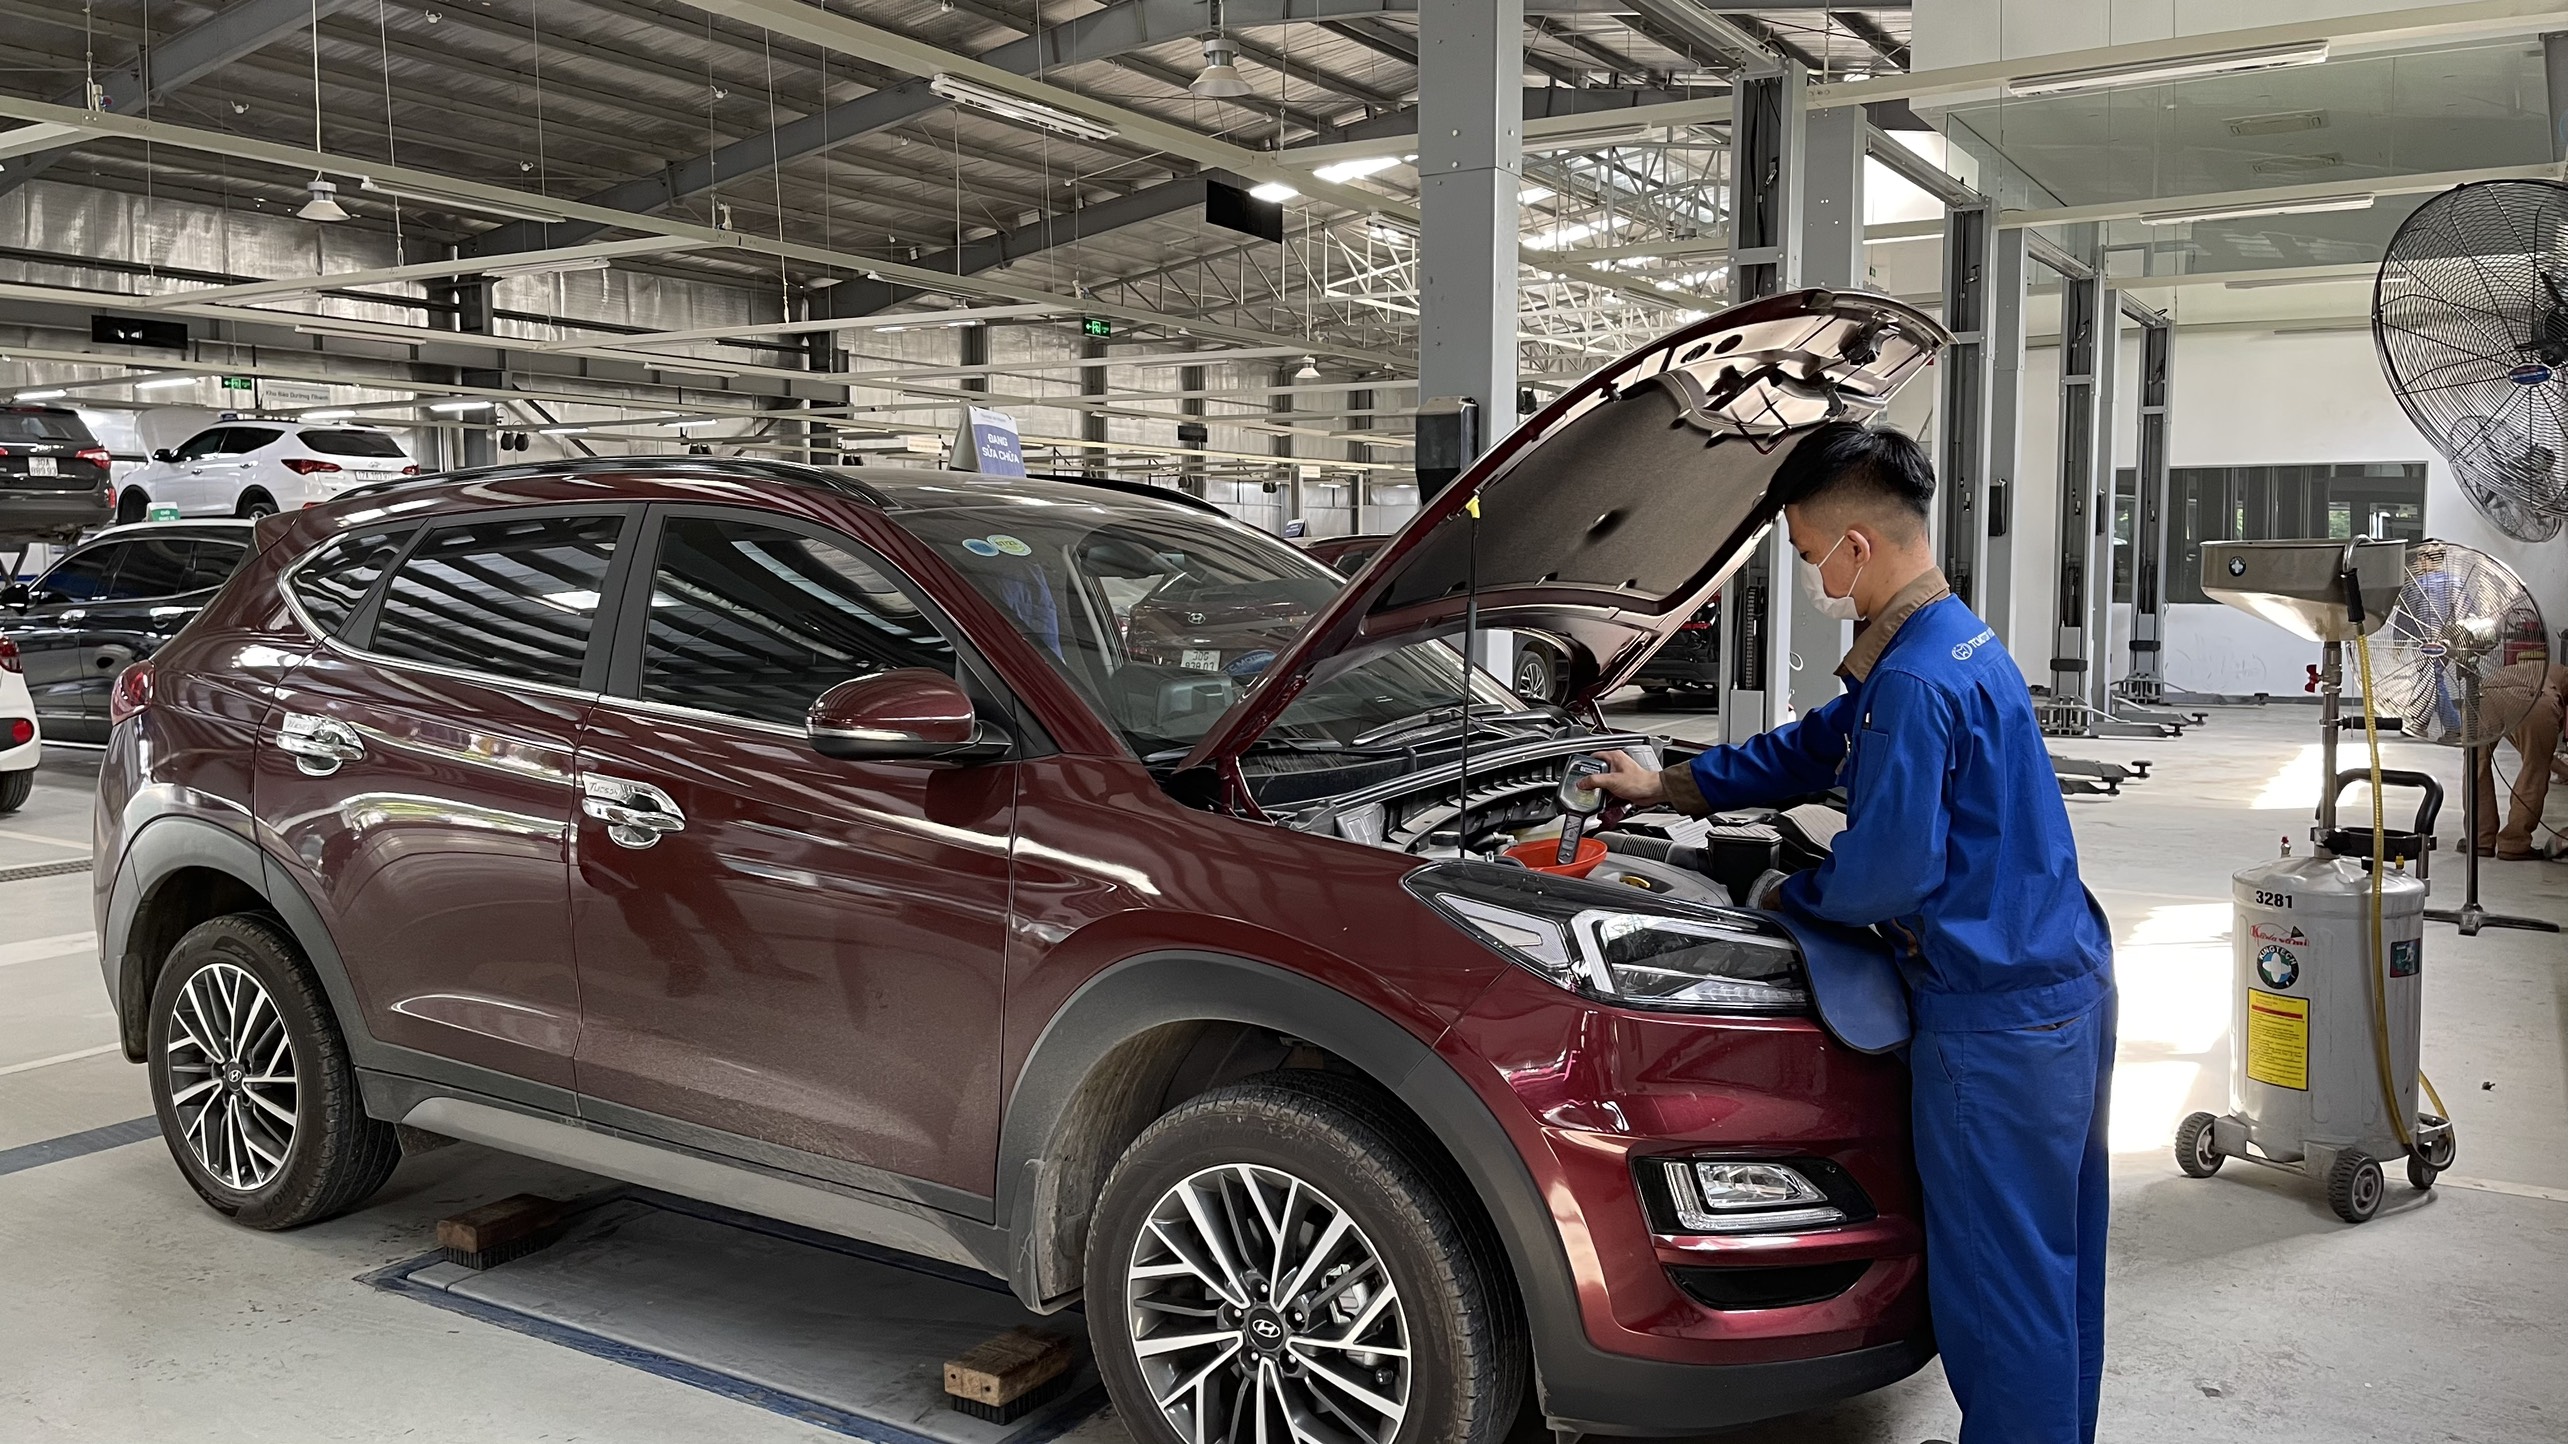 Hyundai An Khánh nơi cung cấp các sản phẩm chất lượng và uy tín - ảnh 3